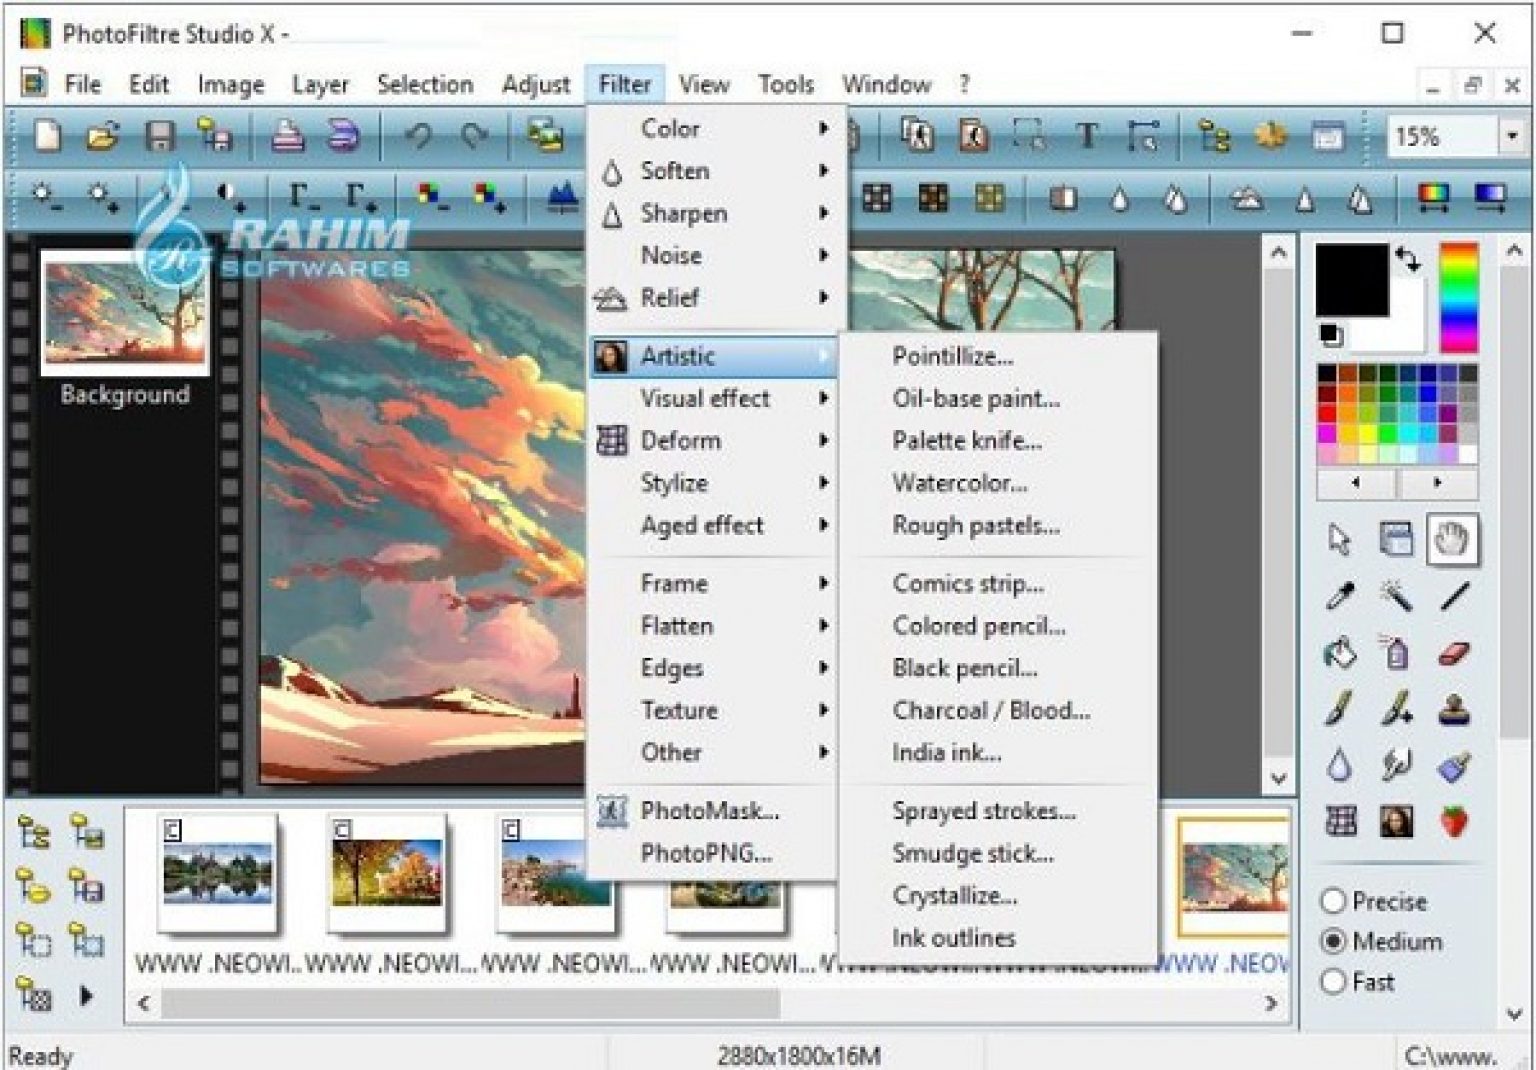 PhotoFiltre Studio 11.5.0 download the new